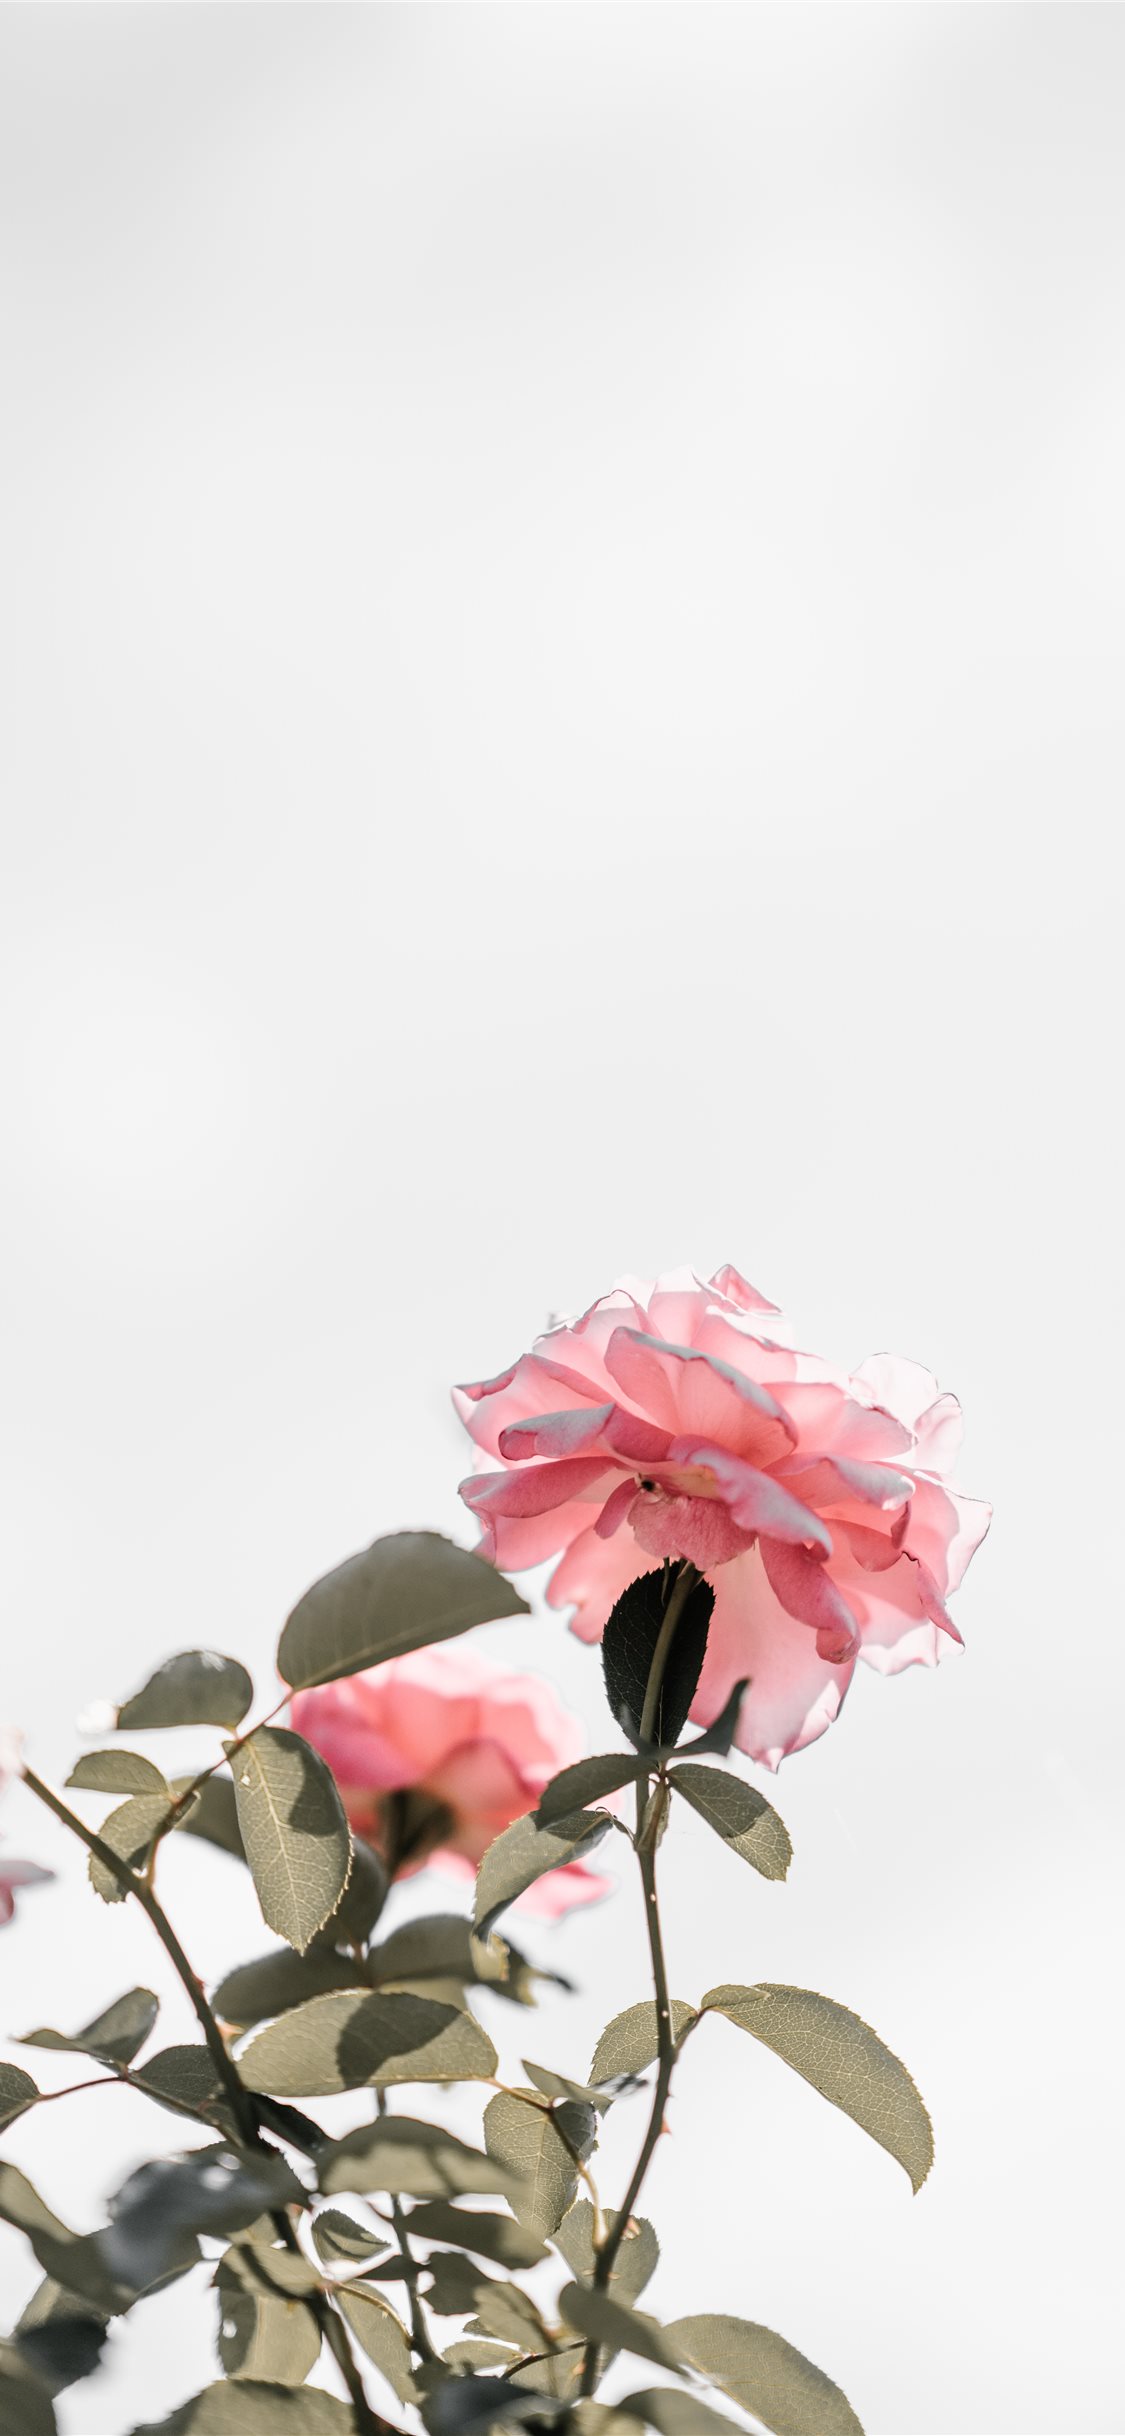 Hình nền iPhone X hồng nhạt với hoa hồng trống trải là điểm nhấn hoàn hảo cho chiếc điện thoại của bạn. Thiết kế tưởng chừng đơn giản này lại ẩn chứa một vẻ đẹp tinh tế và sang trọng. Sử dụng hình ảnh này sẽ khiến bạn thấy đẳng cấp và sành điệu hơn. 